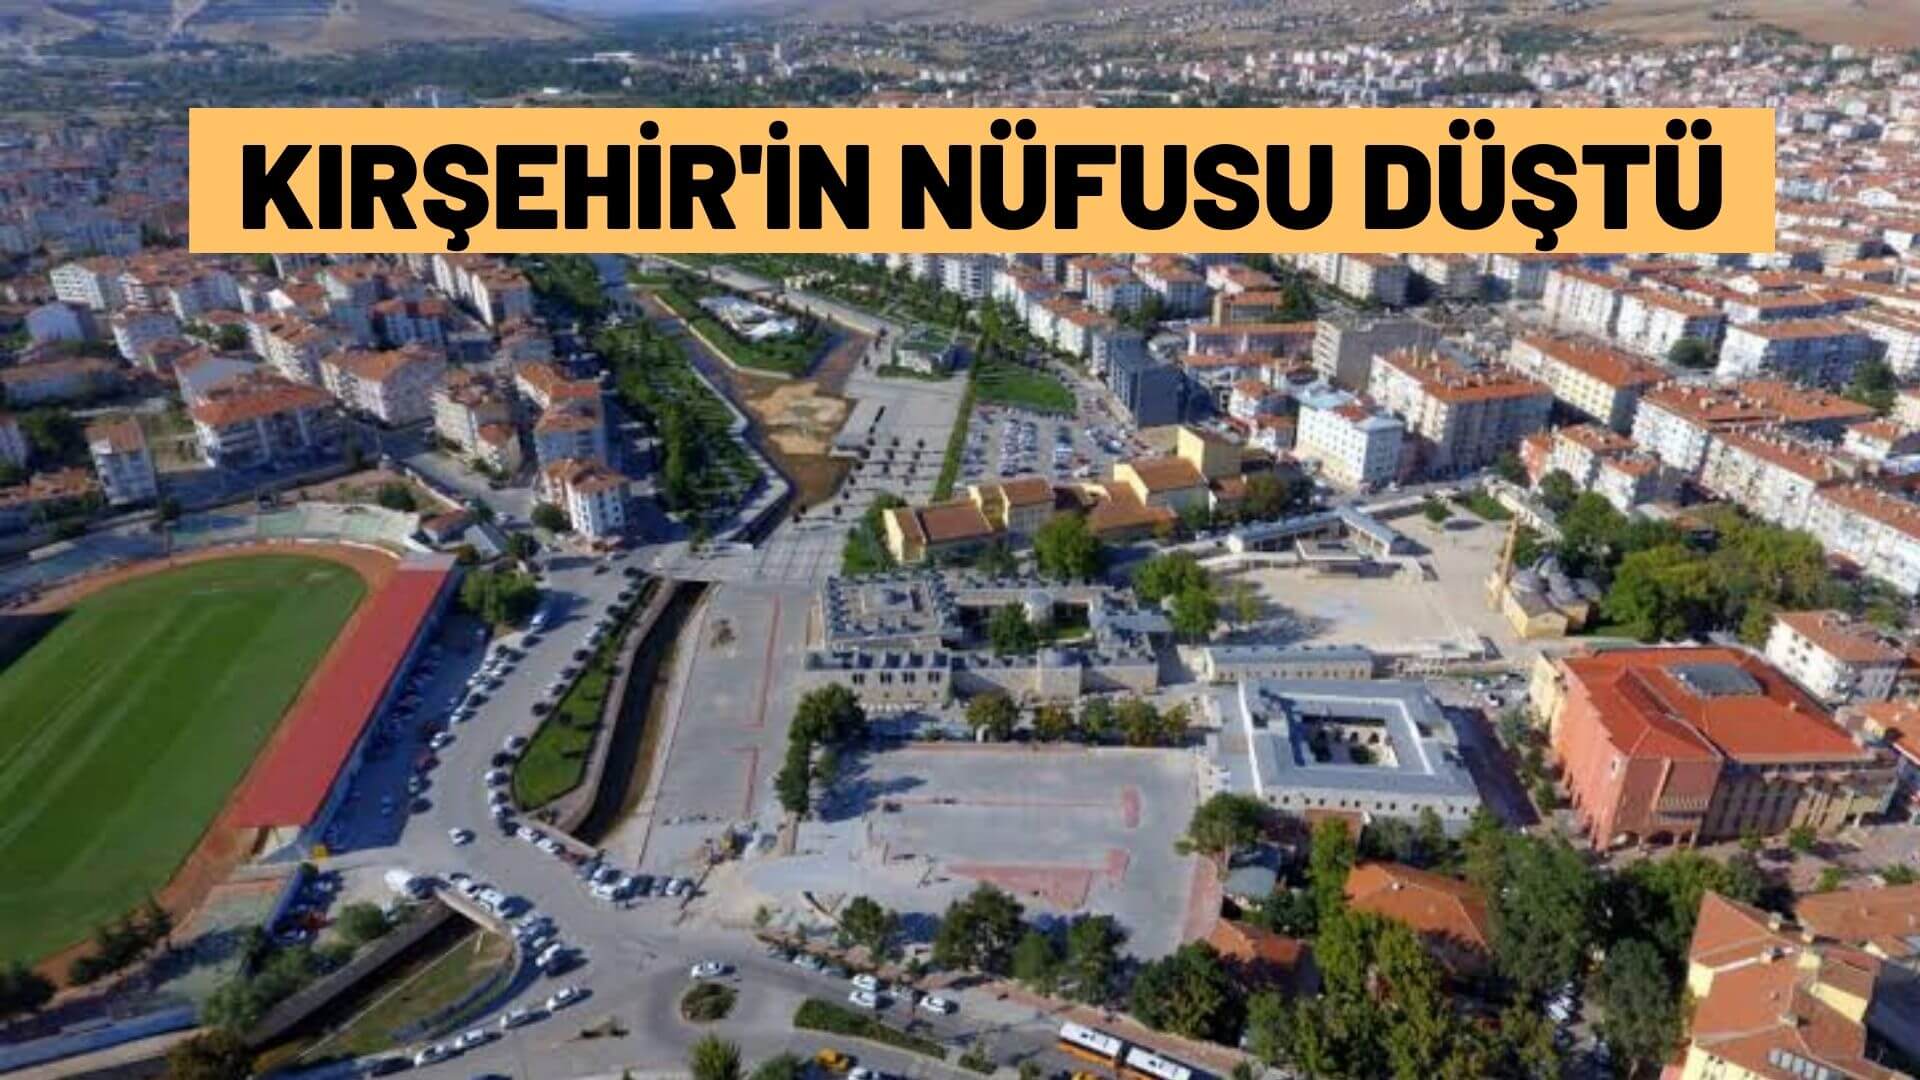 Kırşehir’in nüfusu düştü